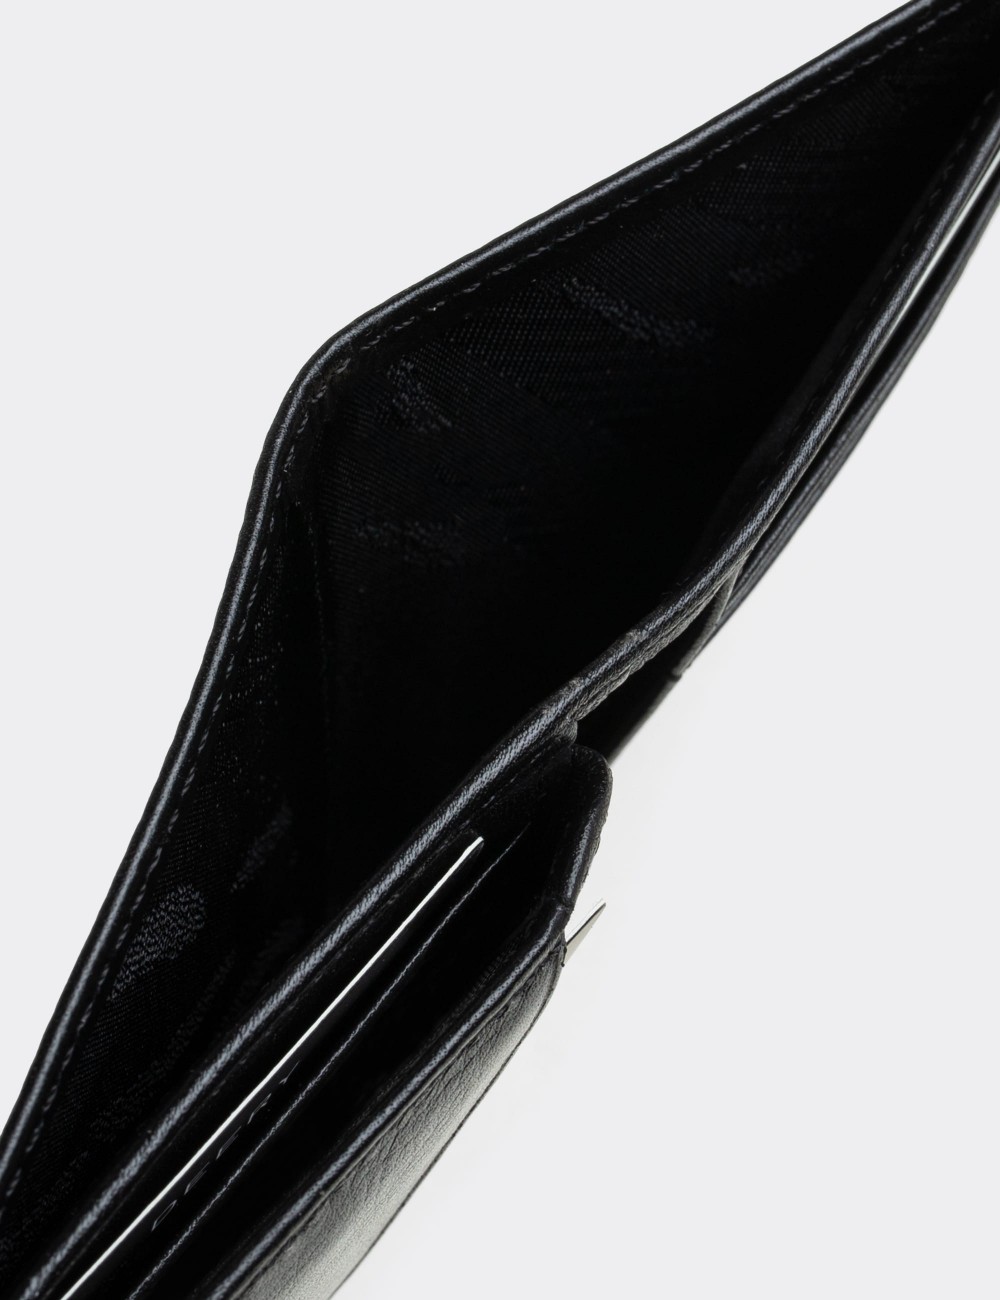  Leather Black Men's Wallet - 00215MSYHZ01